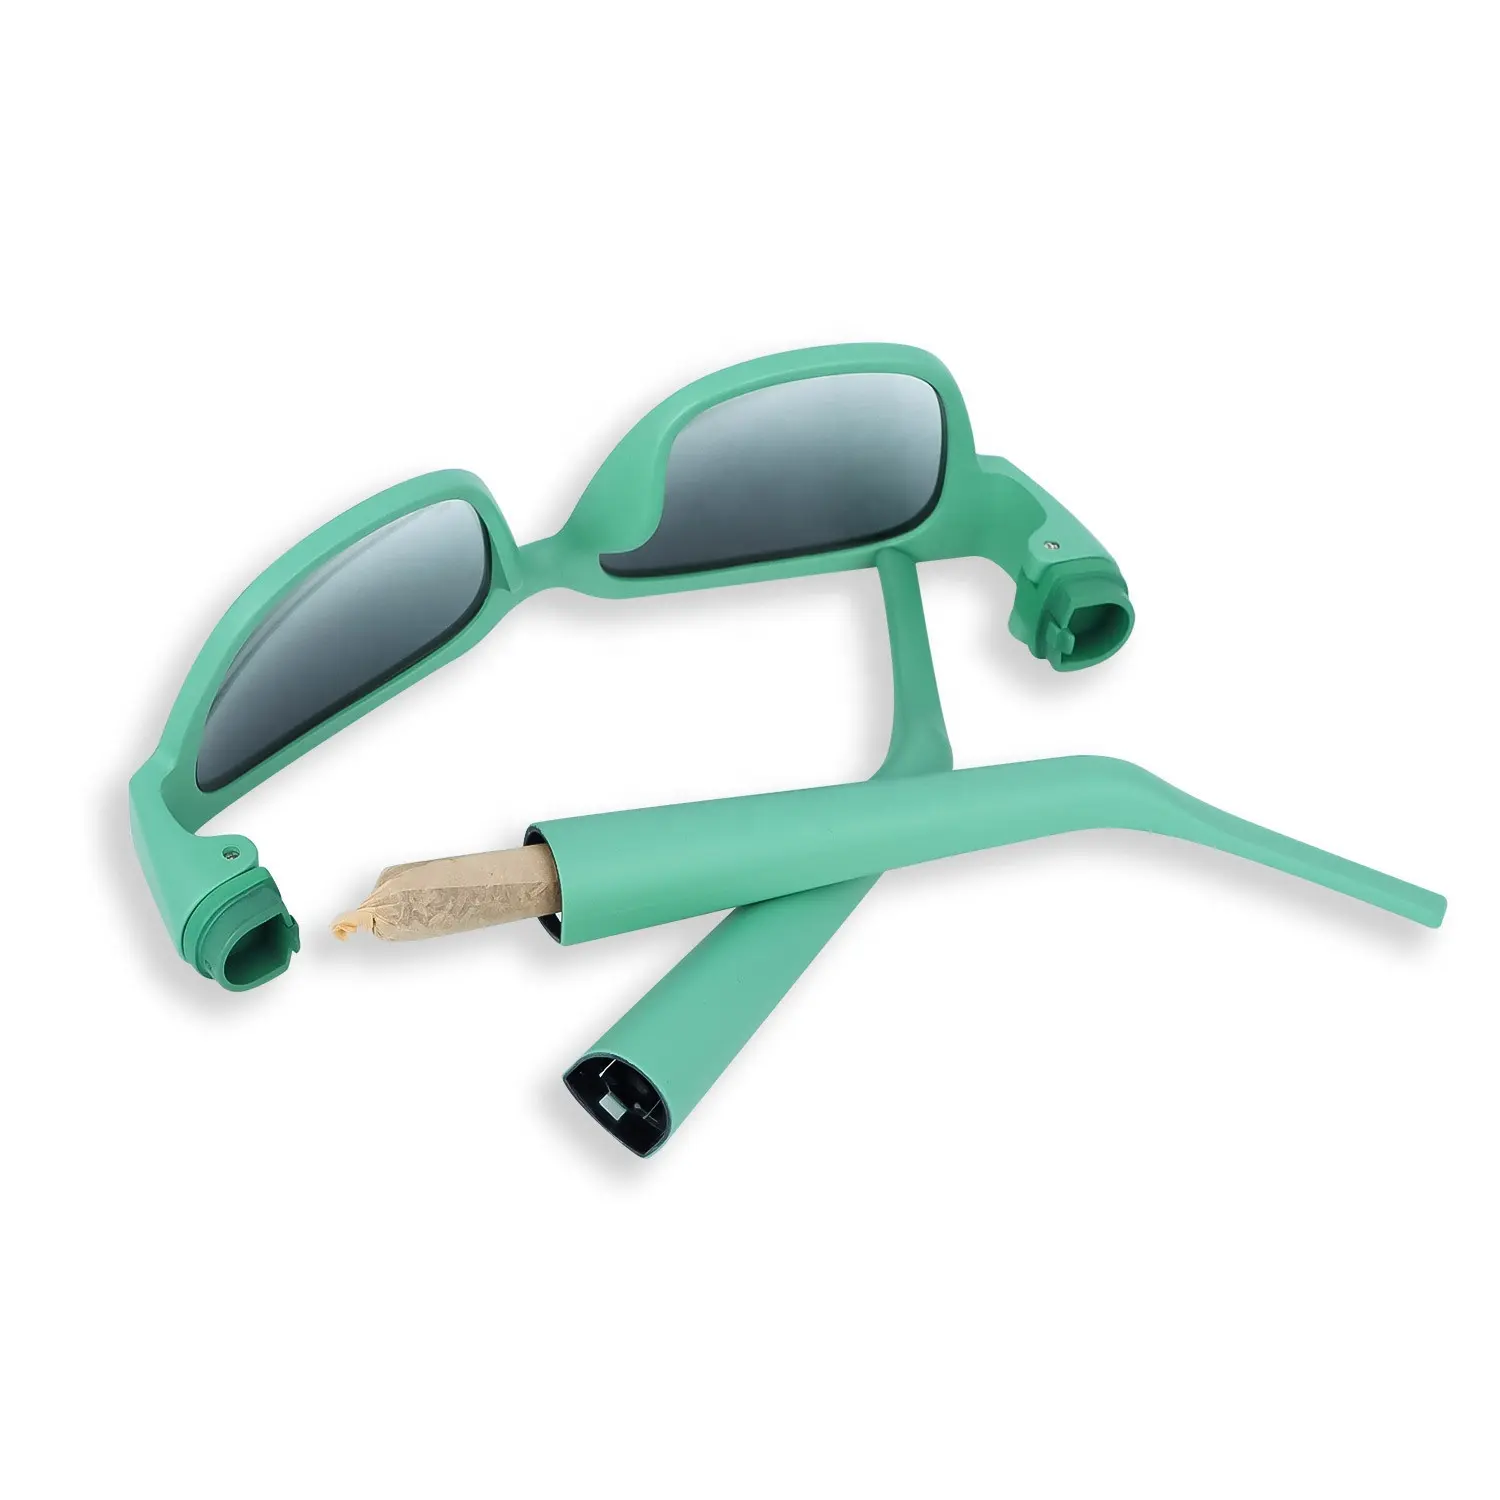 Nuevas gafas multifuncionales con tubos de almacenamiento para cigarrillos Las gafas de sol dos en uno aceptan logotipo personalizado